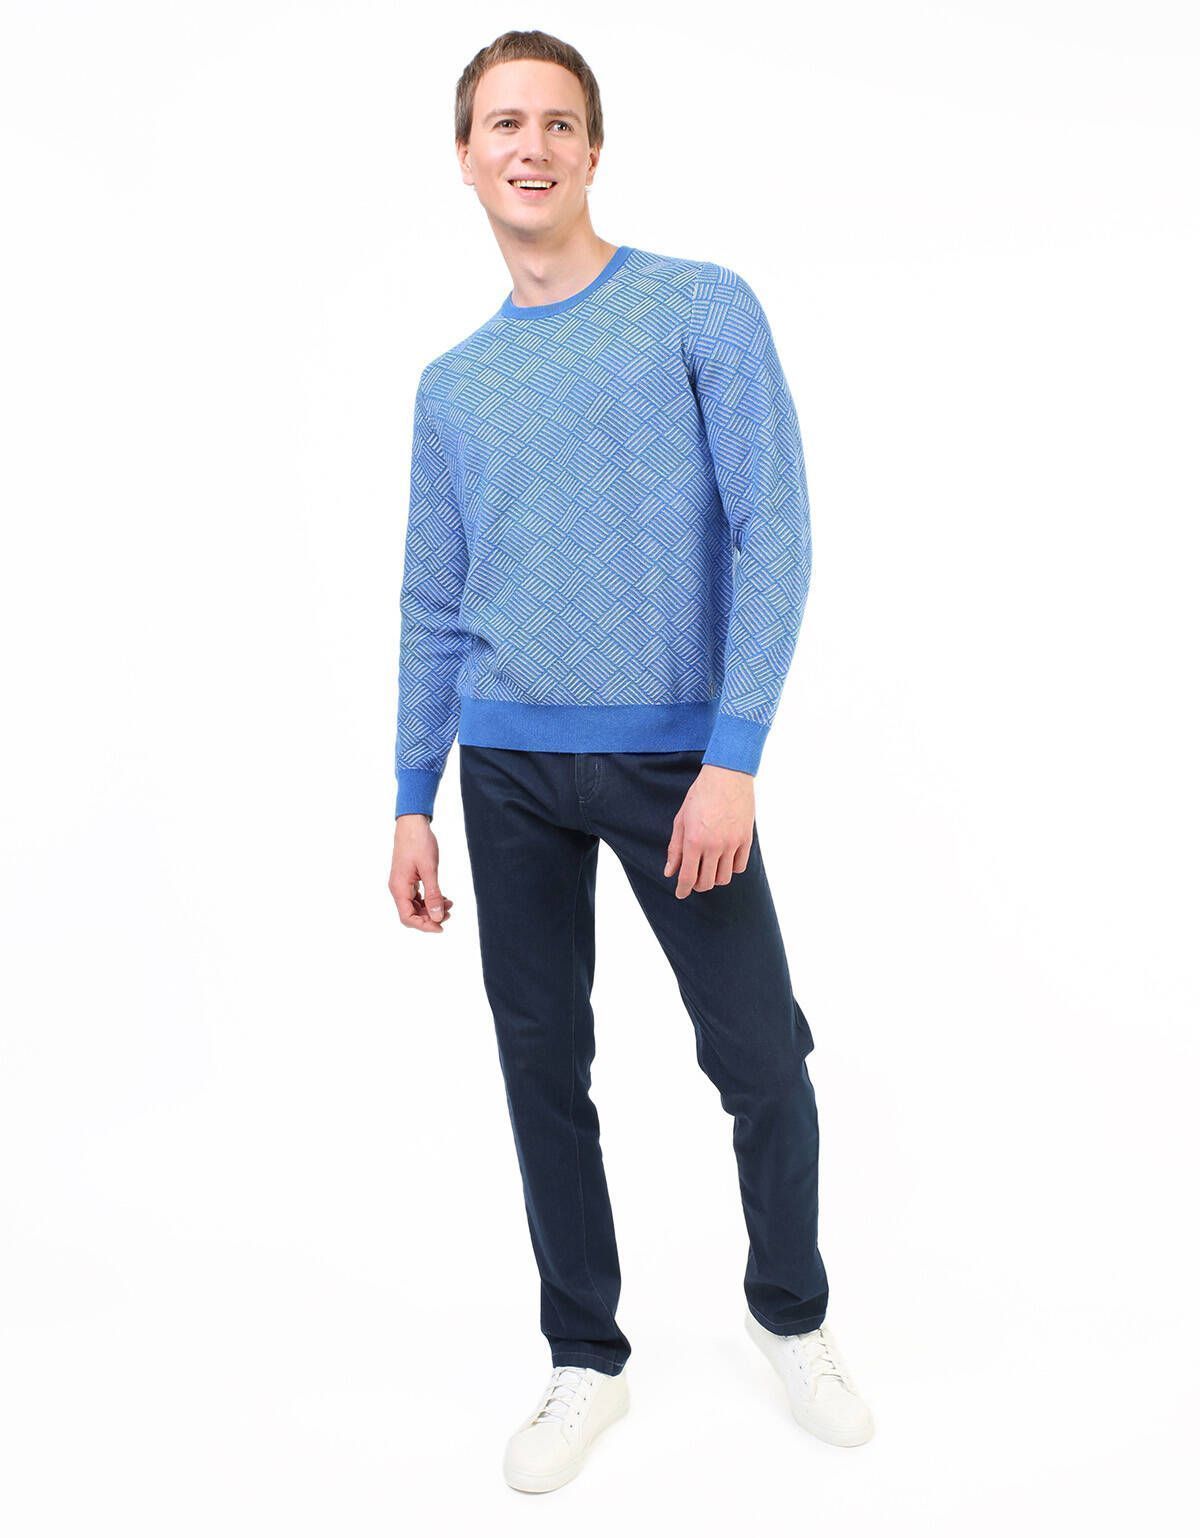 Пуловер с круглым вырезом синий с рисунком | купить в интернет-магазине Olymp-Men